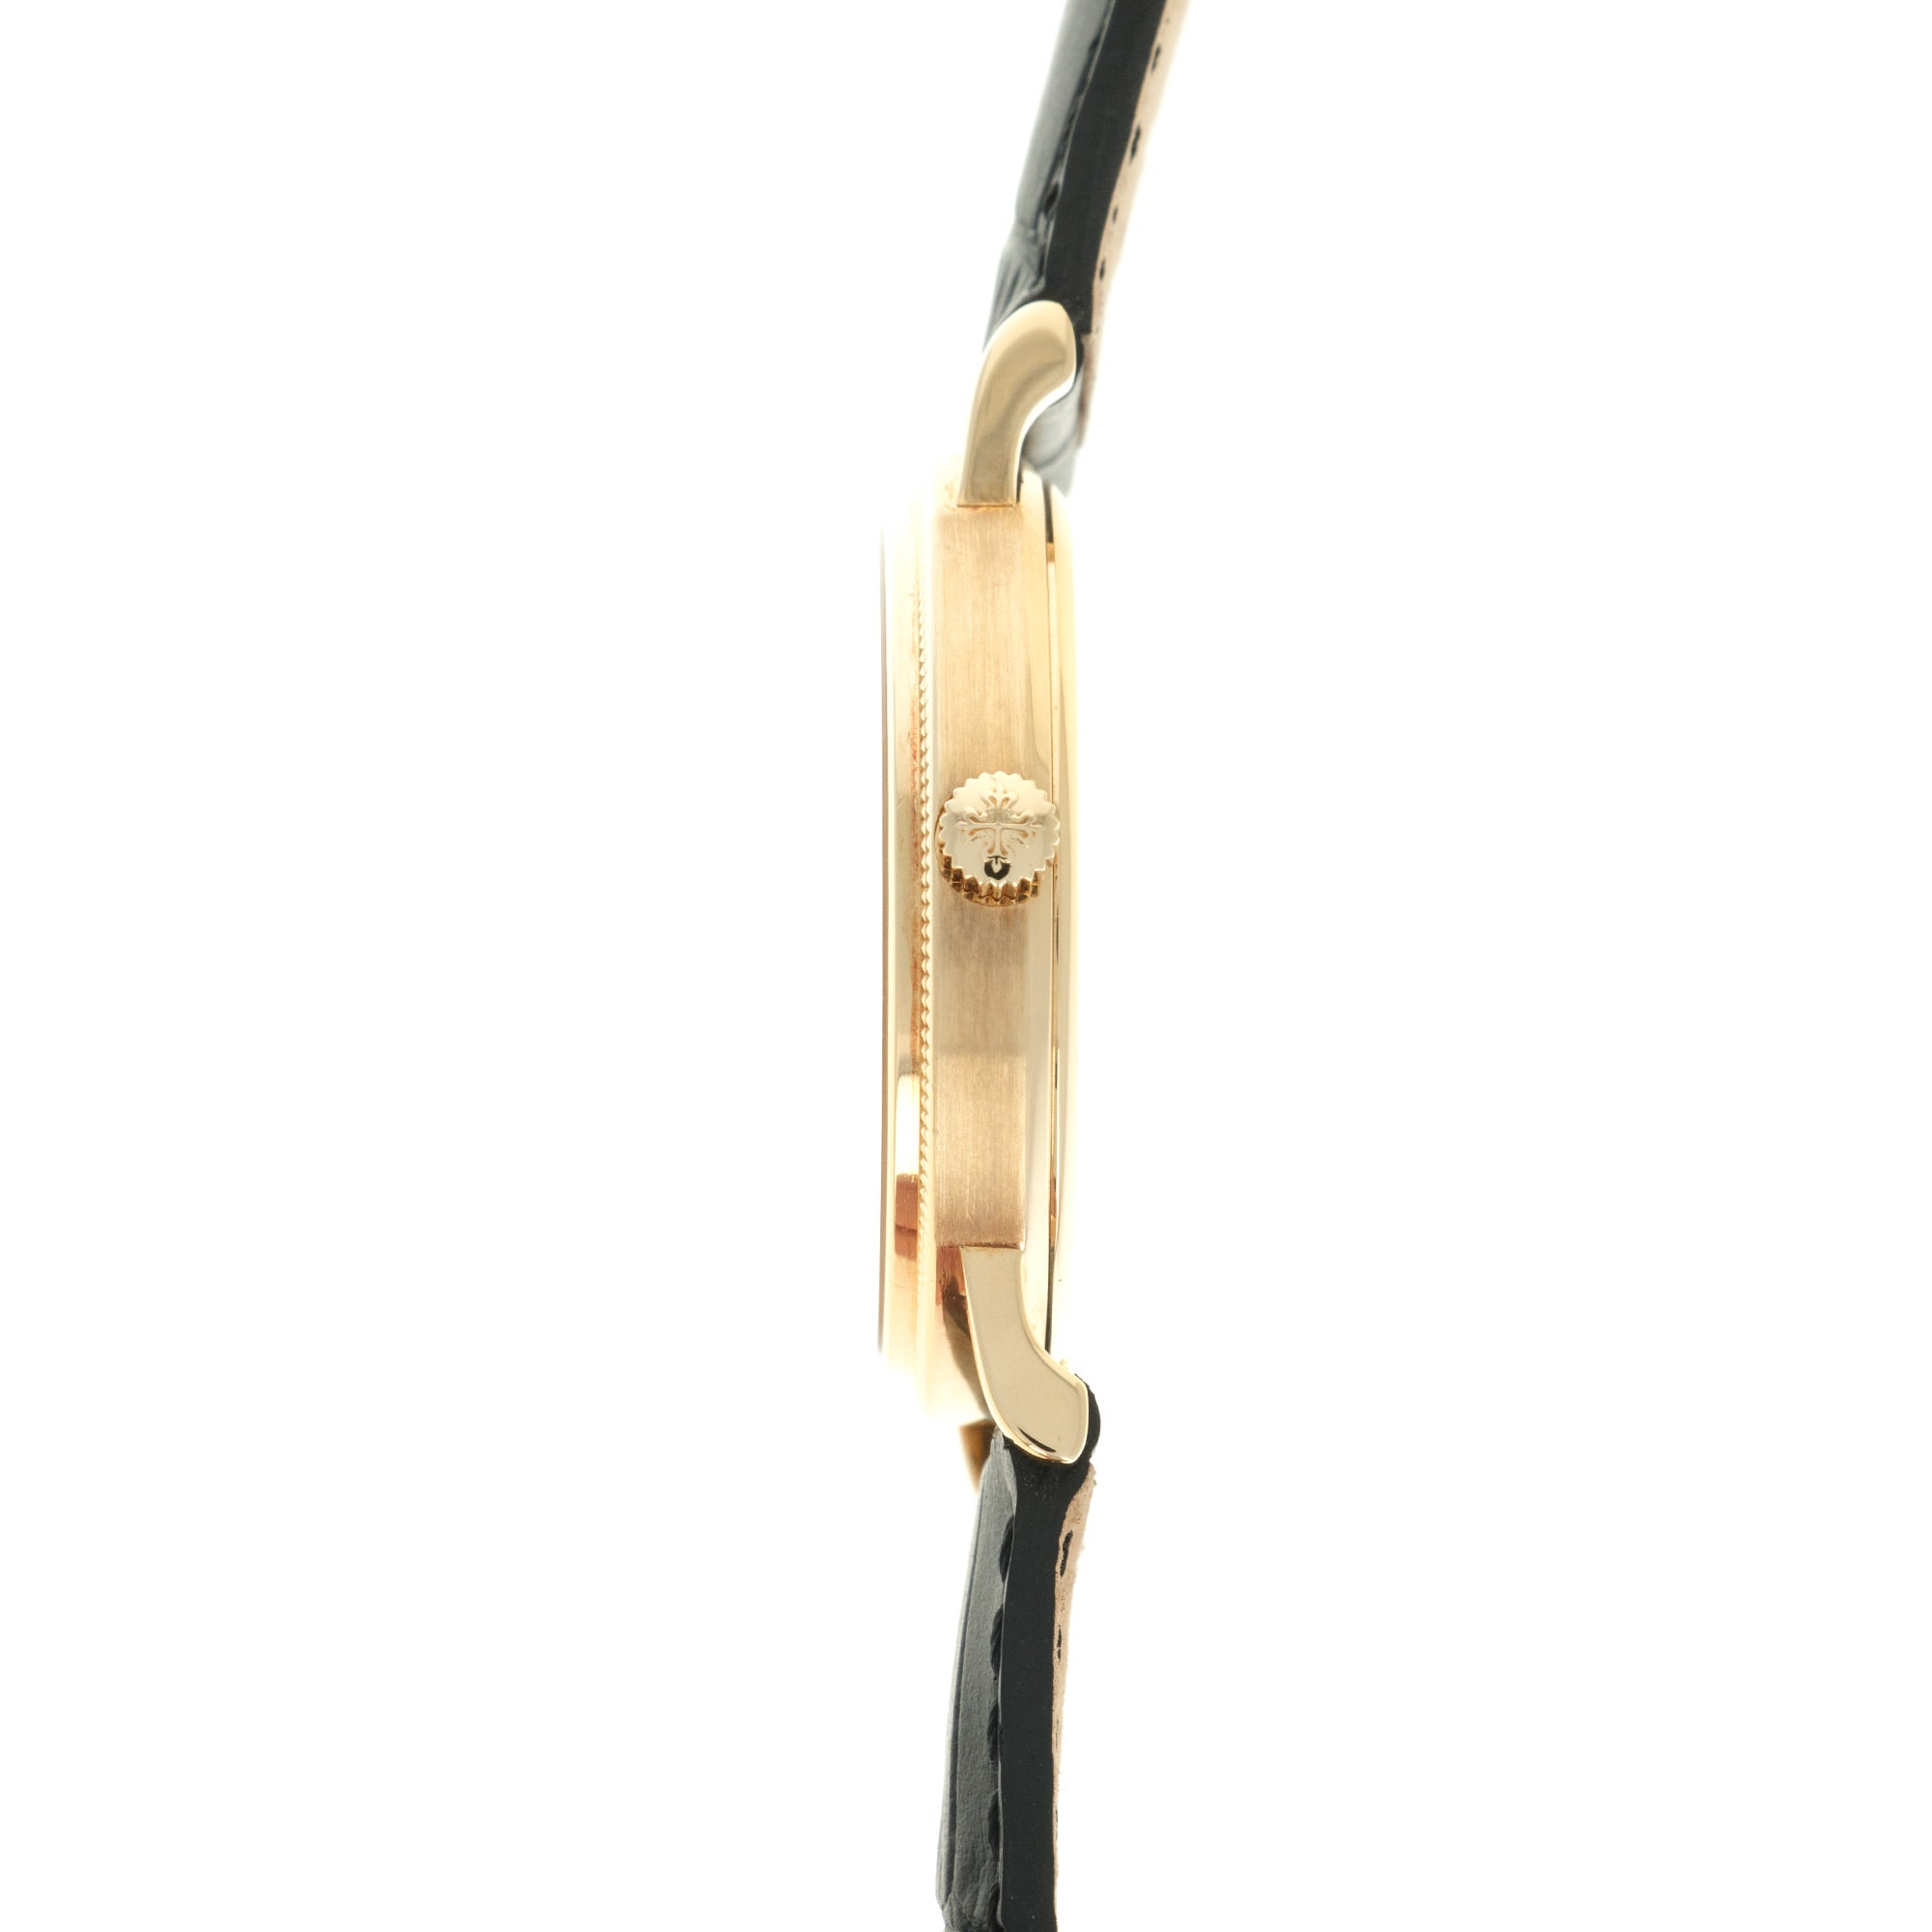 Patek Philippe - Patek Philippe Yellow Gold Calatrava Watch Ref. 3802 - The Keystone Watches